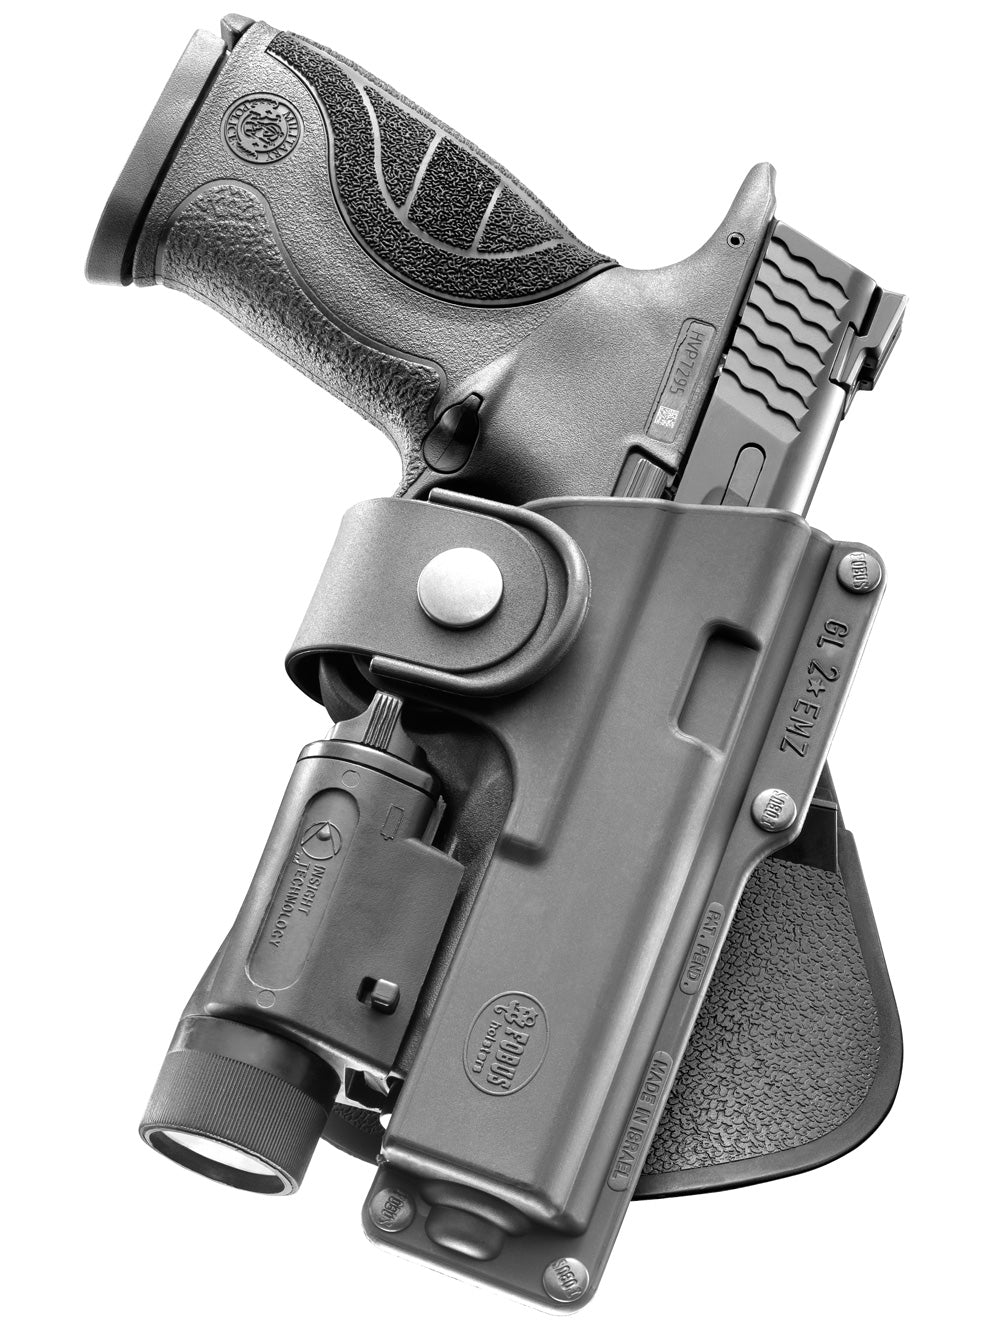 Fobus em19 paddle holster glock 19 (accomodates acc. laser, light etc)